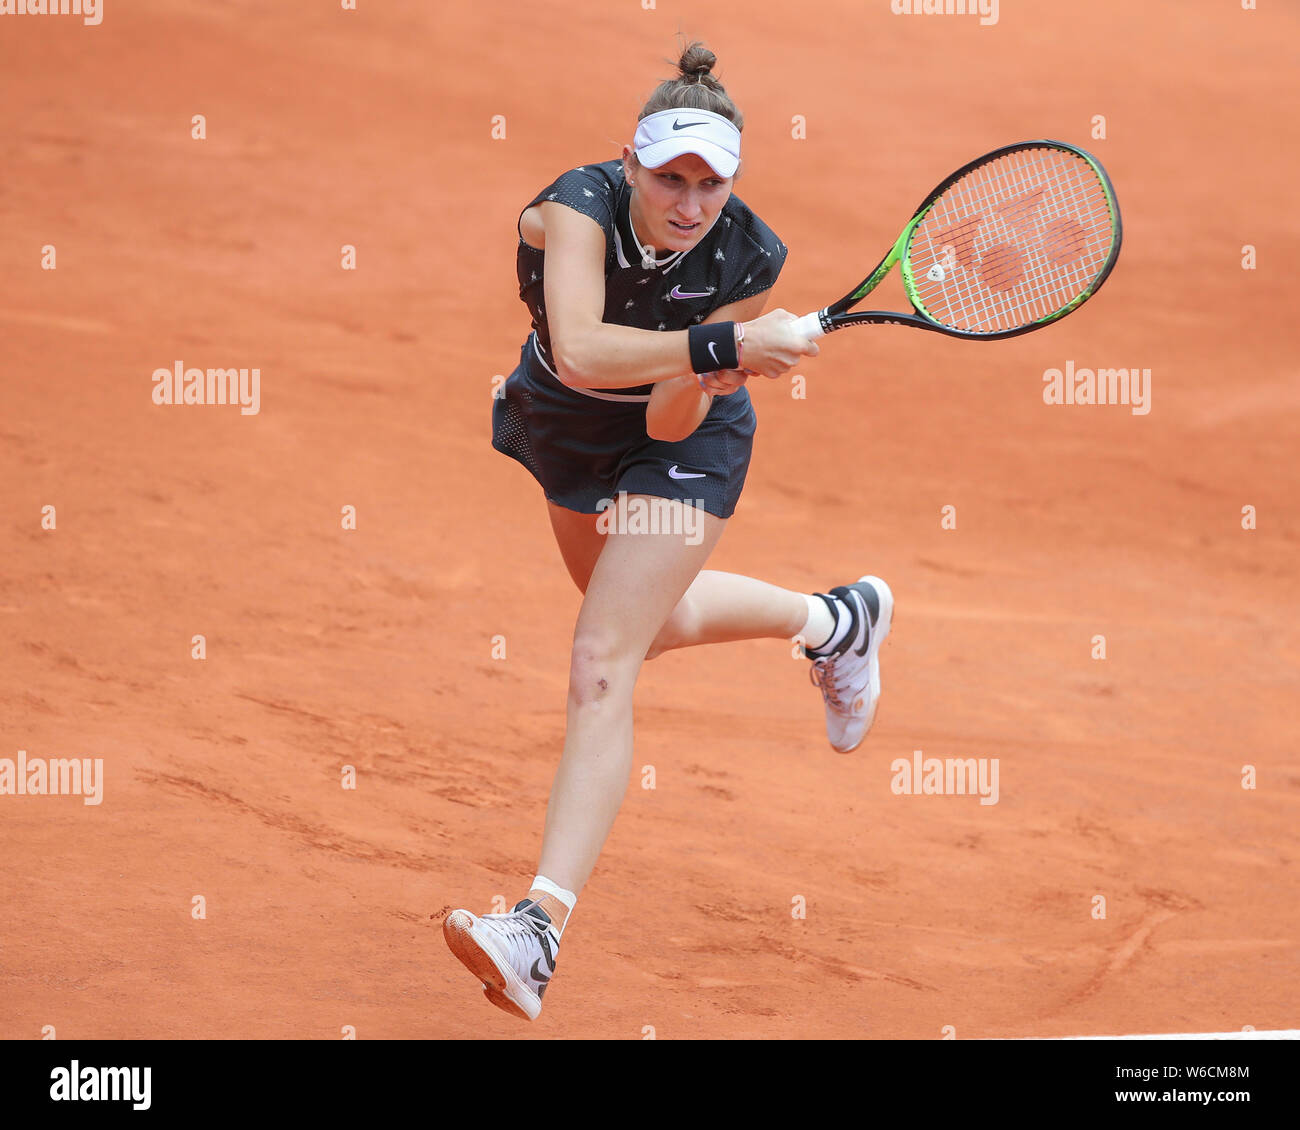 Tschechische Tennisspieler Marketa Vondrousova spielen eine Rückhand geschossen im French Open 2019 Turnier, Paris, Frankreich Stockfoto